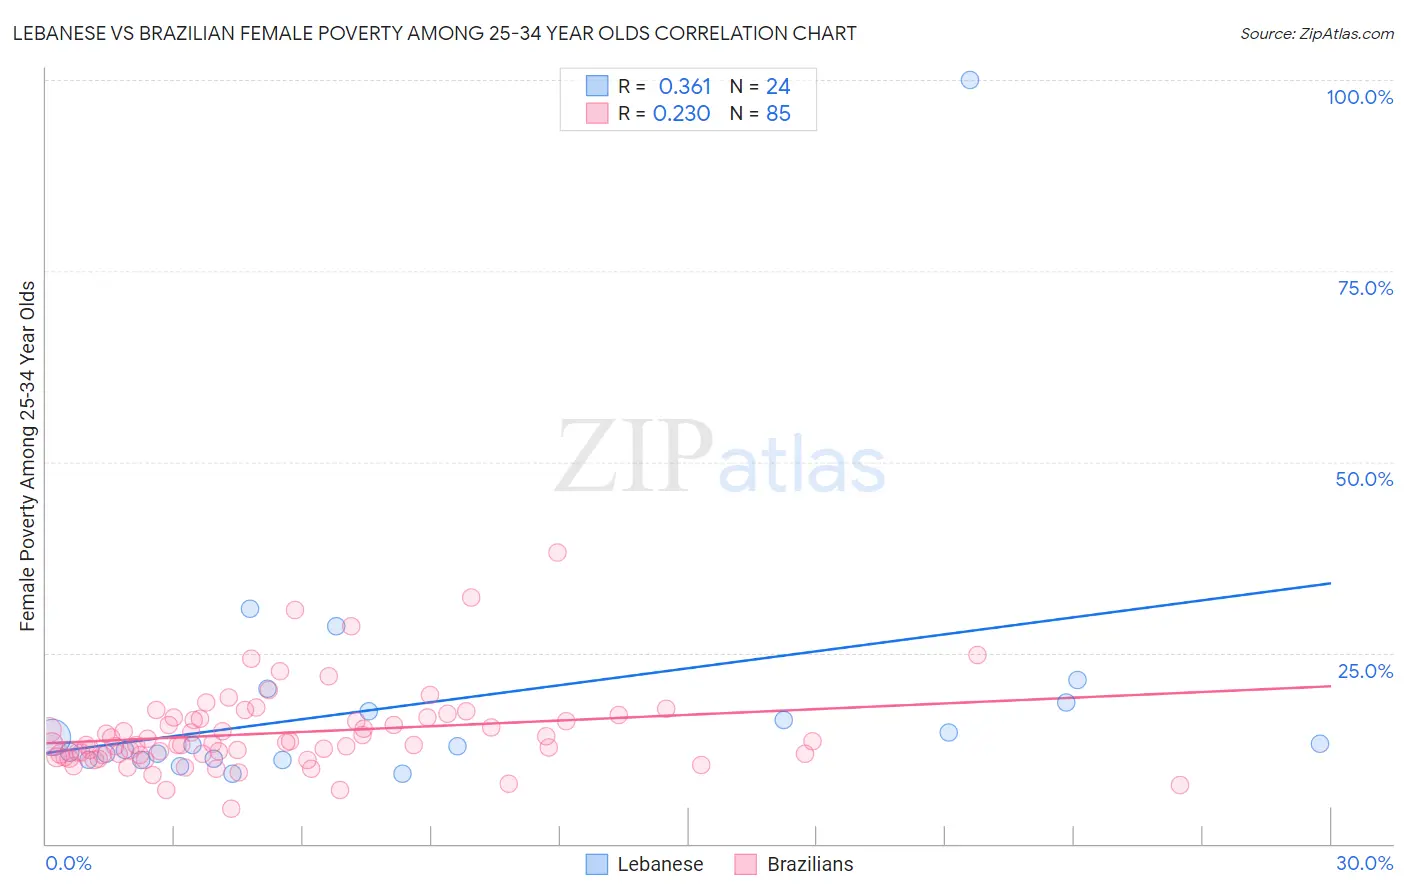 Lebanese vs Brazilian Female Poverty Among 25-34 Year Olds